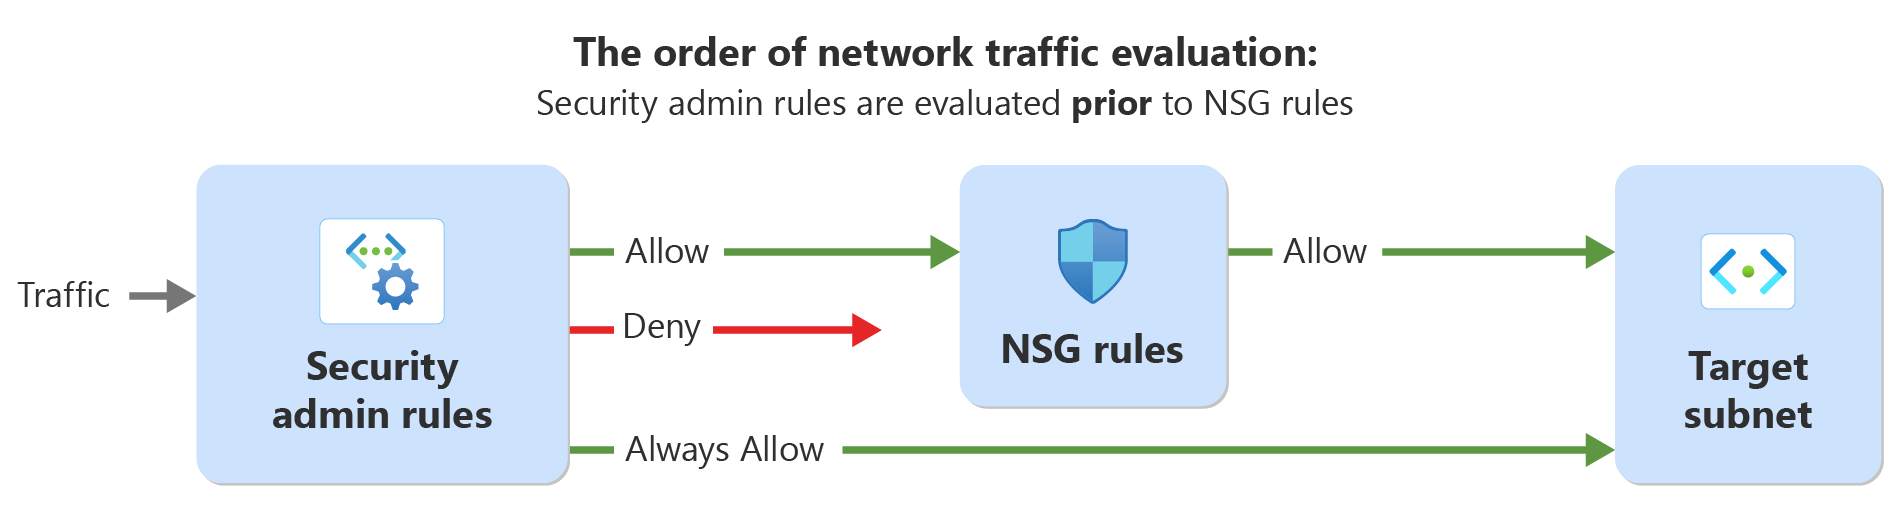 Diagram przedstawiający kolejność oceny ruchu sieciowego z regułami administratora zabezpieczeń i regułami zabezpieczeń sieci.